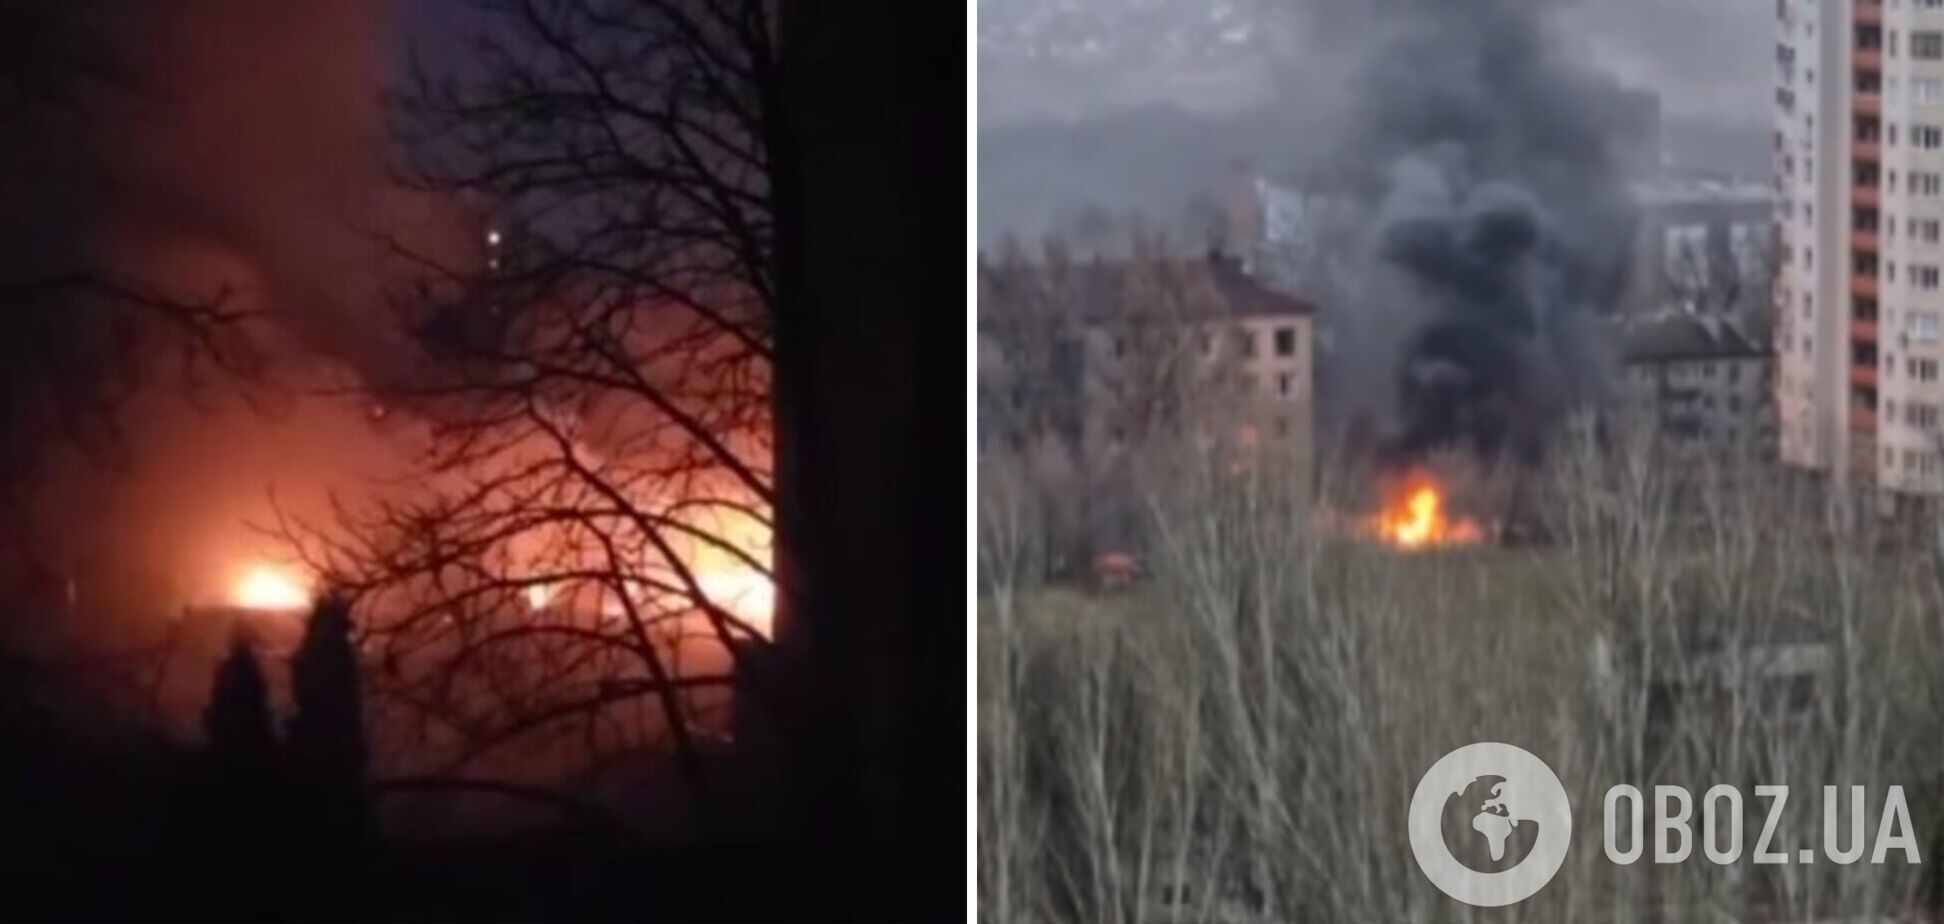 Россия обвинила ВСУ в обстреле больницы в Донецке: фото и видео с места событий